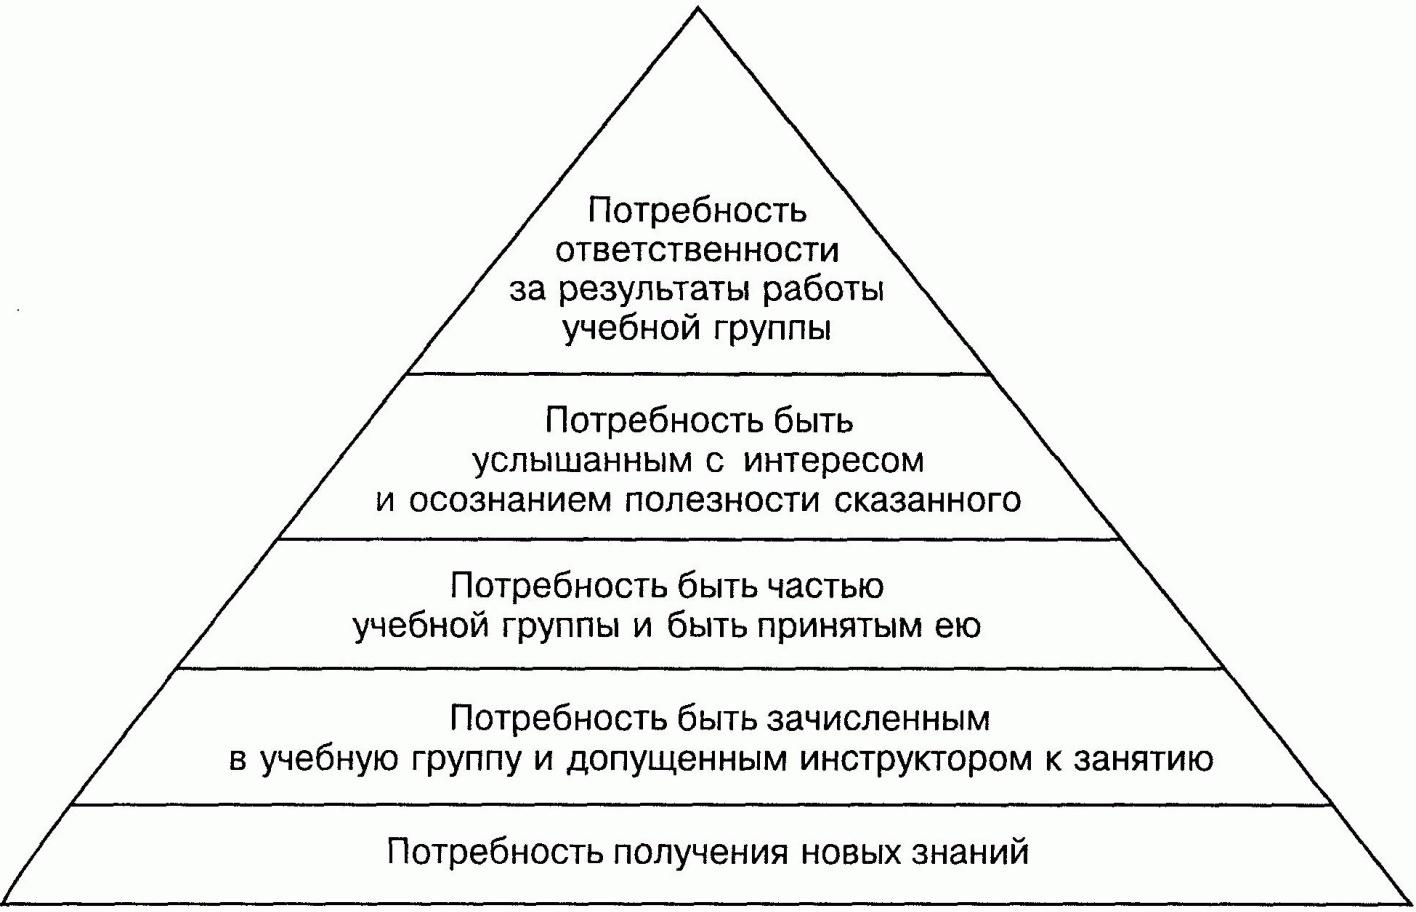 Пирамида потребностей по Марксу